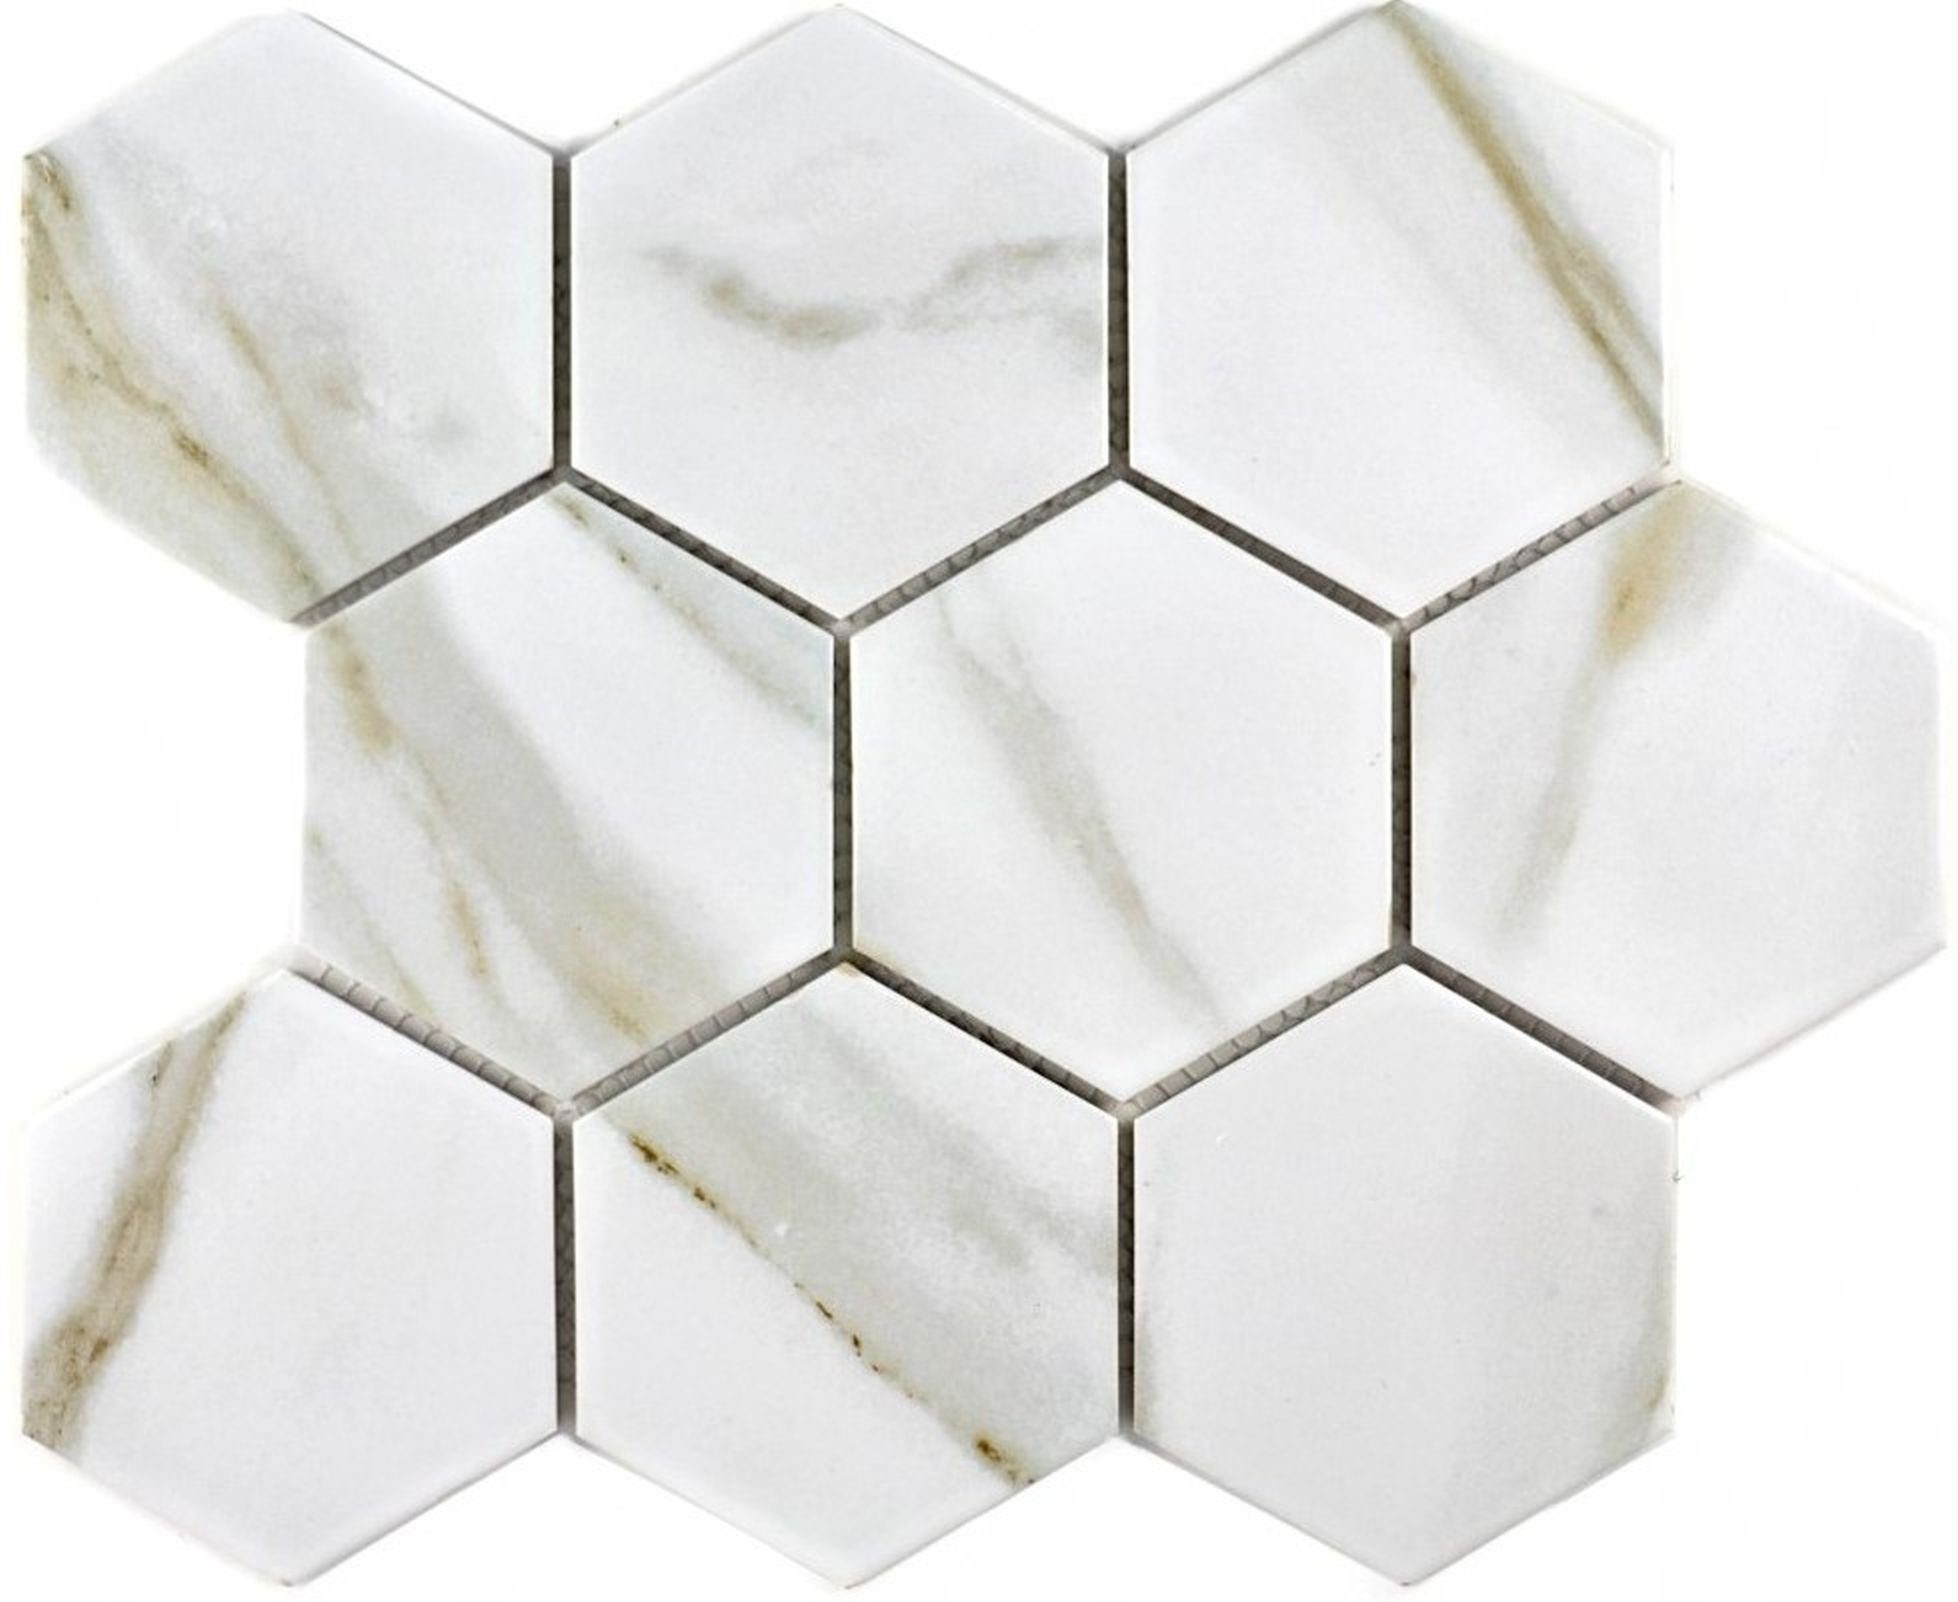 Mosani Mosaikfliesen Hexagonale Sechseck Mosaik Wand grau weiß Calacatta Keramik Fliese